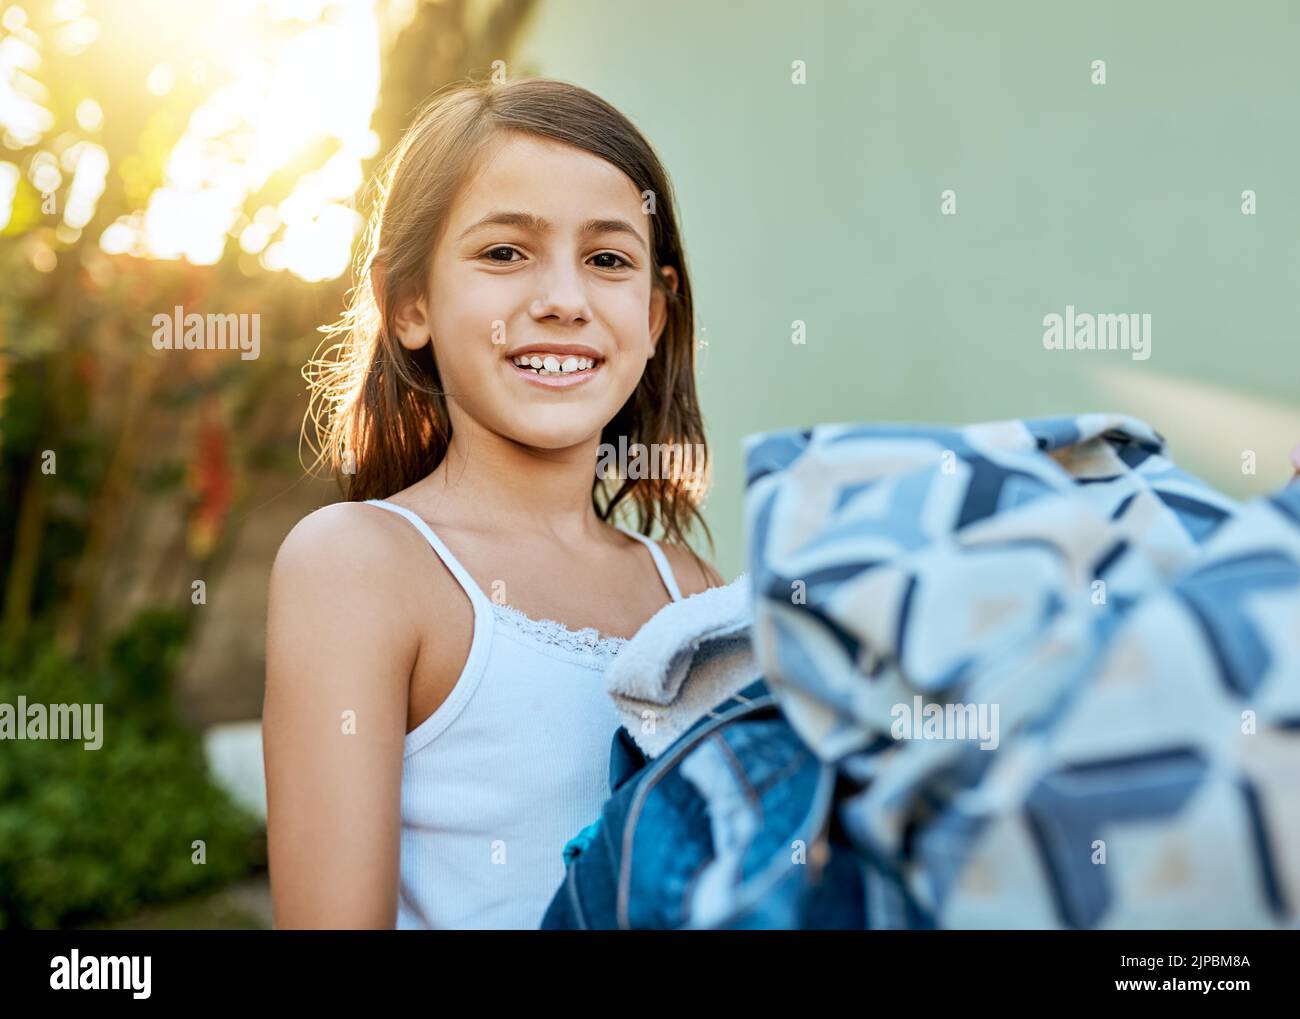 Regardez, je peux tout faire de la lessive par moi-même. Portrait d'une petite fille qui pendait le linge à l'extérieur. Banque D'Images